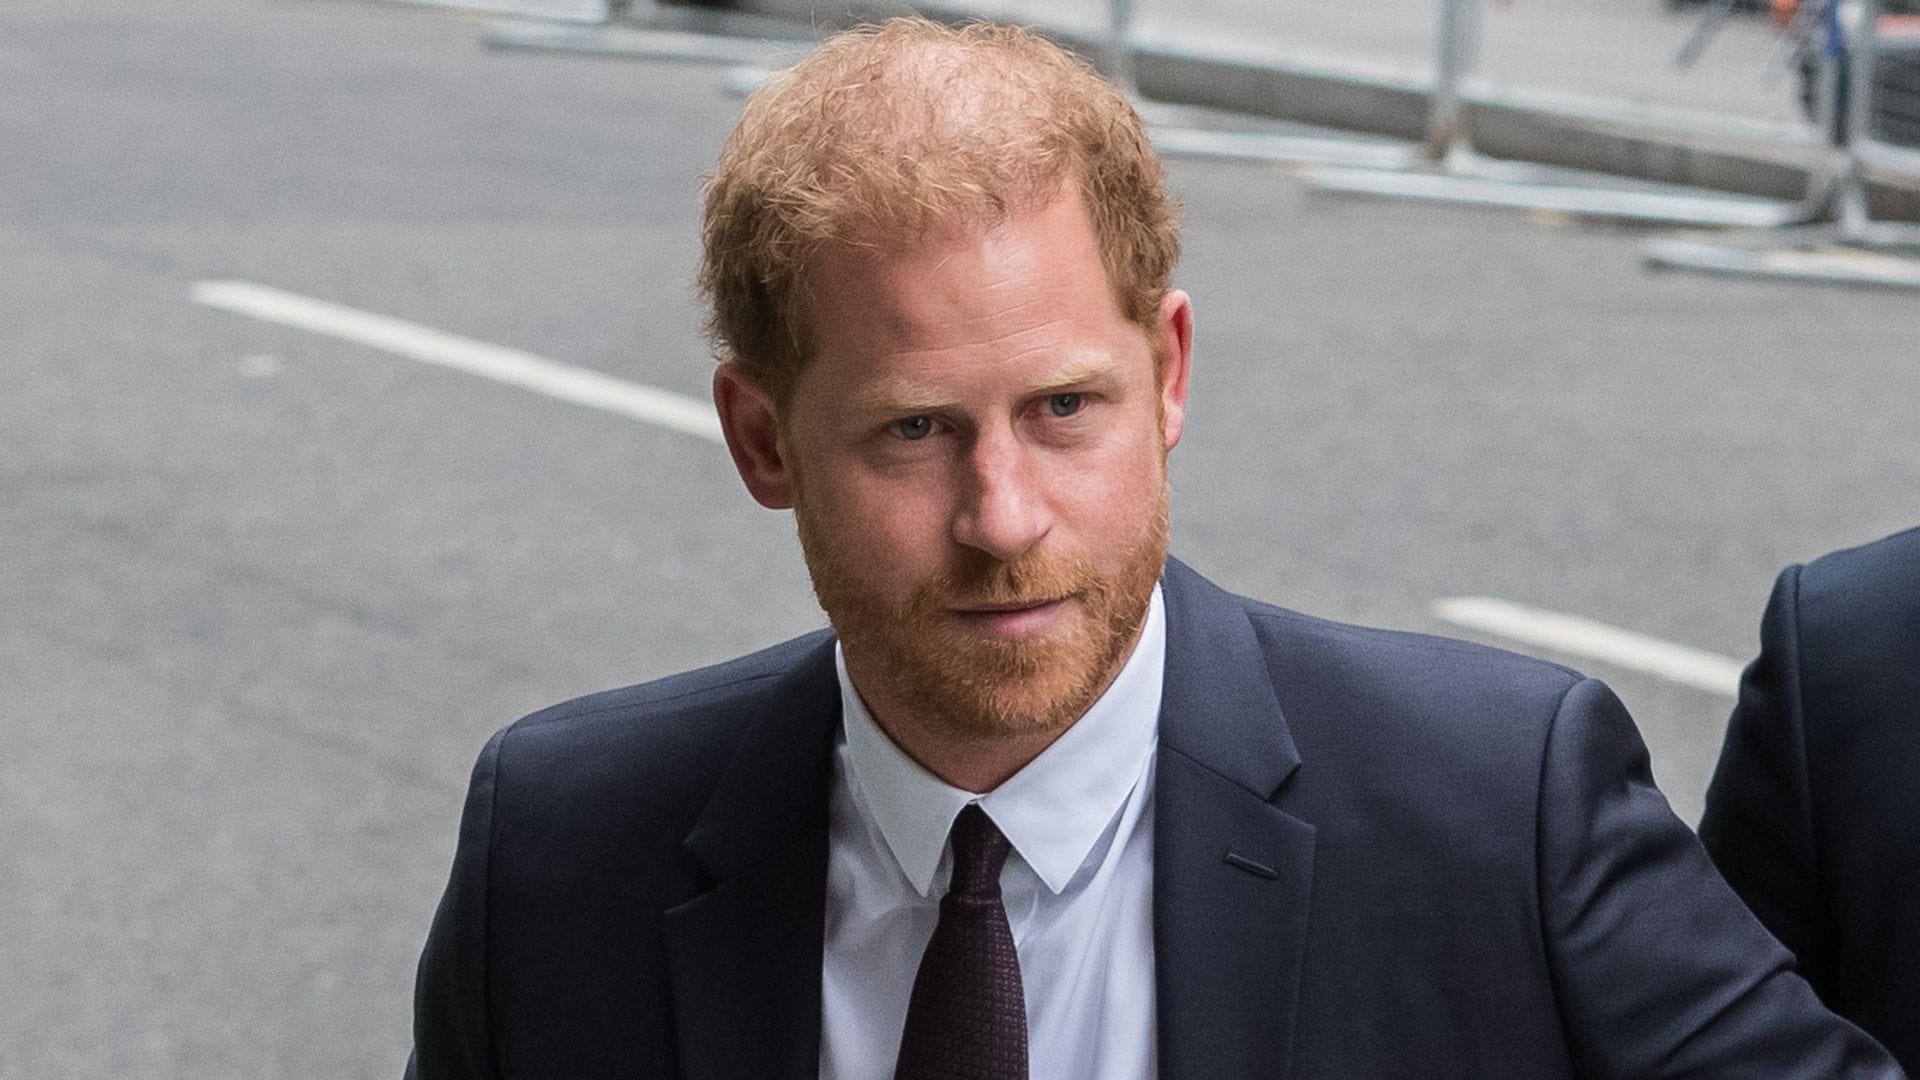 El príncipe Harry revela una de las claves de su distanciamiento con la familia real británica